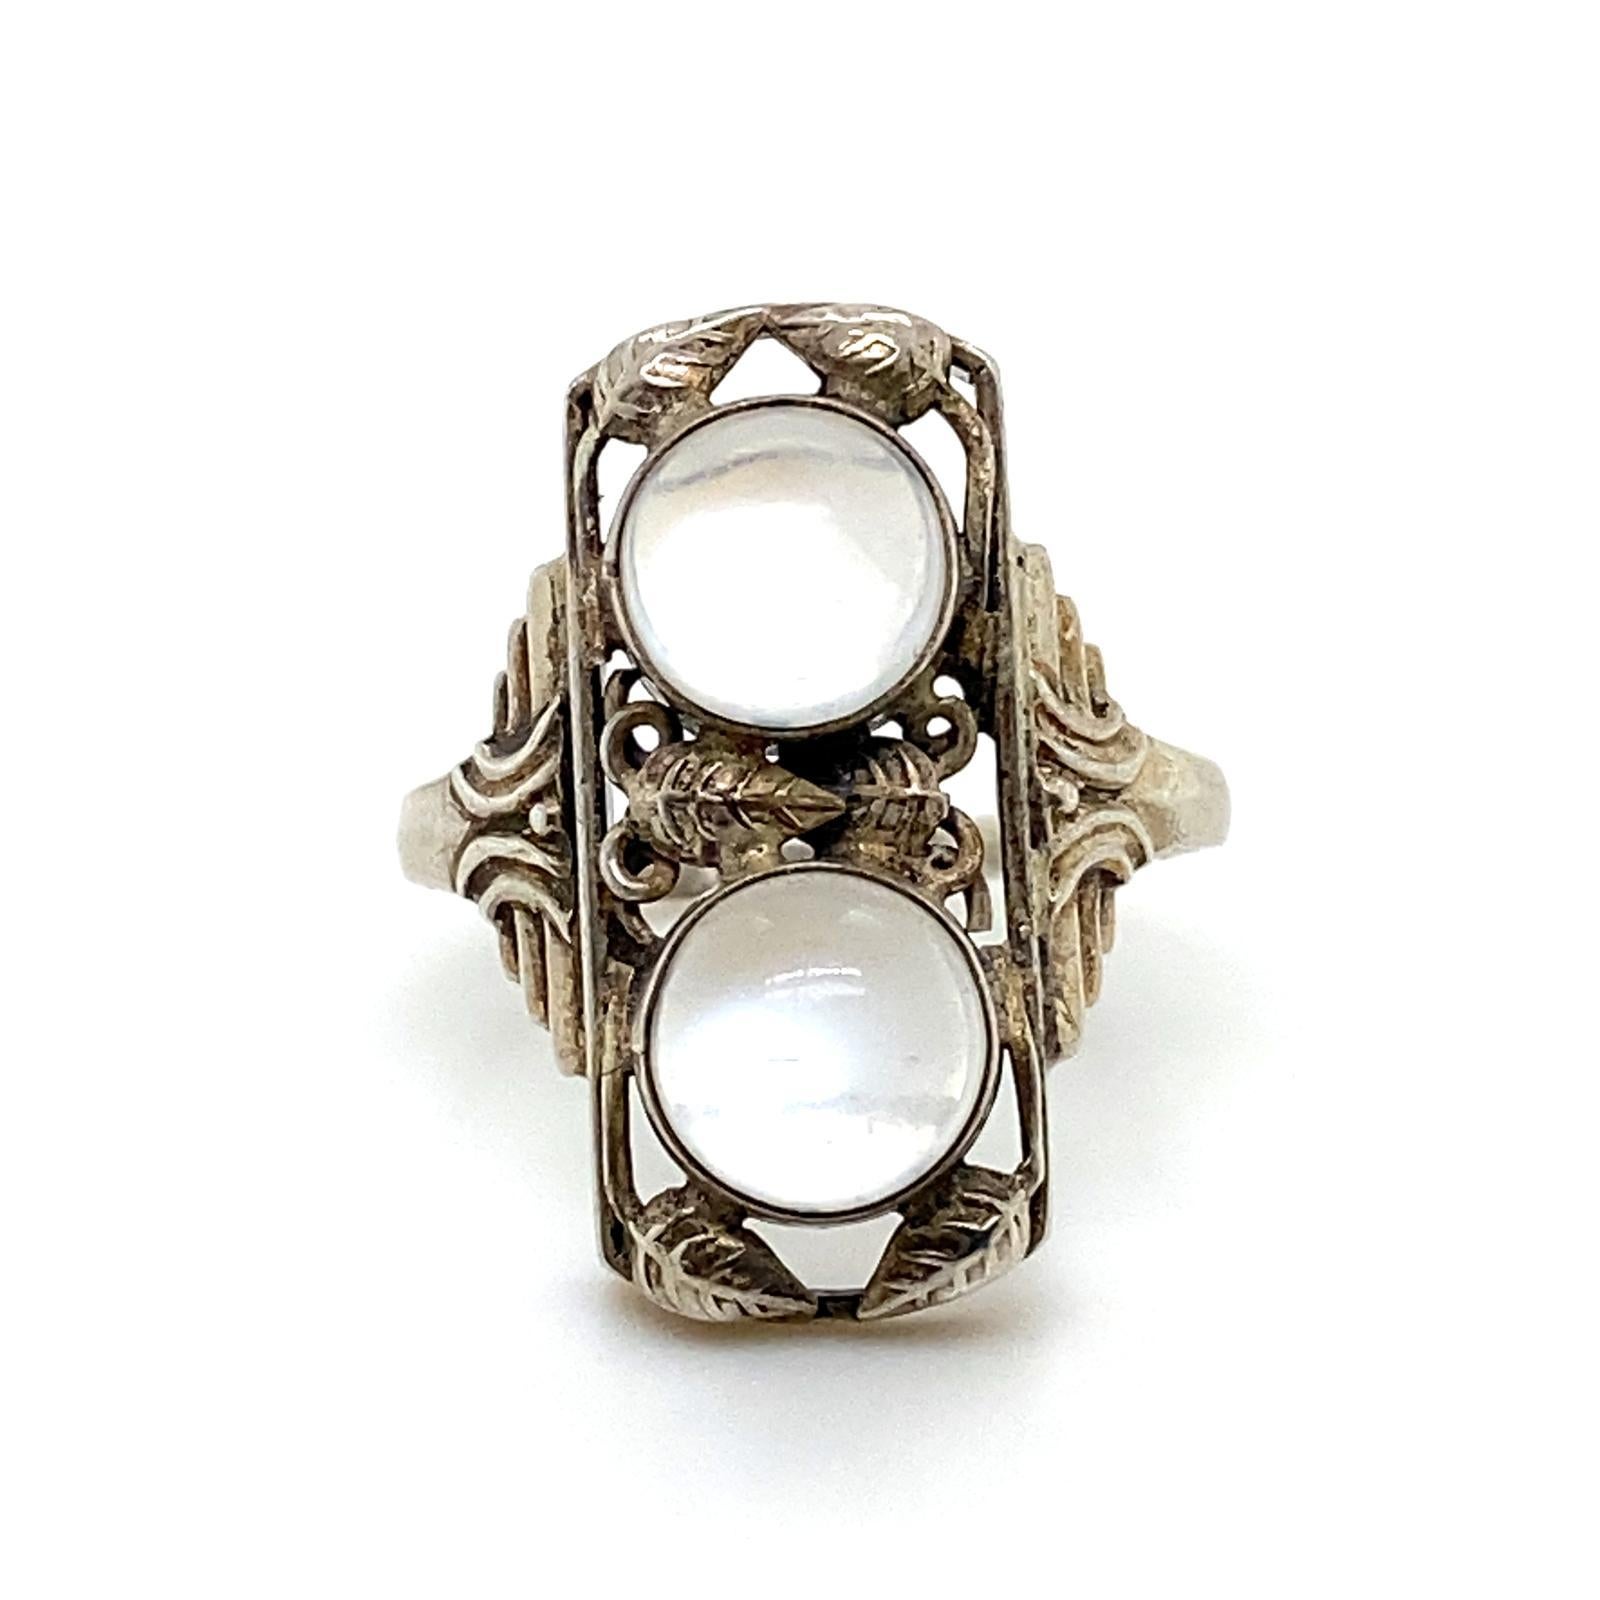 Ein silberner Mondstein-Plakettenring im Jugendstil, um 1920.

Dieser kühne Ring aus Silber hat eine längliche Form mit einem Laubsägearbeiten-Ausschnitt mit Blattmuster und ist mit zwei runden Cabochon-Mondsteinen besetzt.
Auf den Schultern